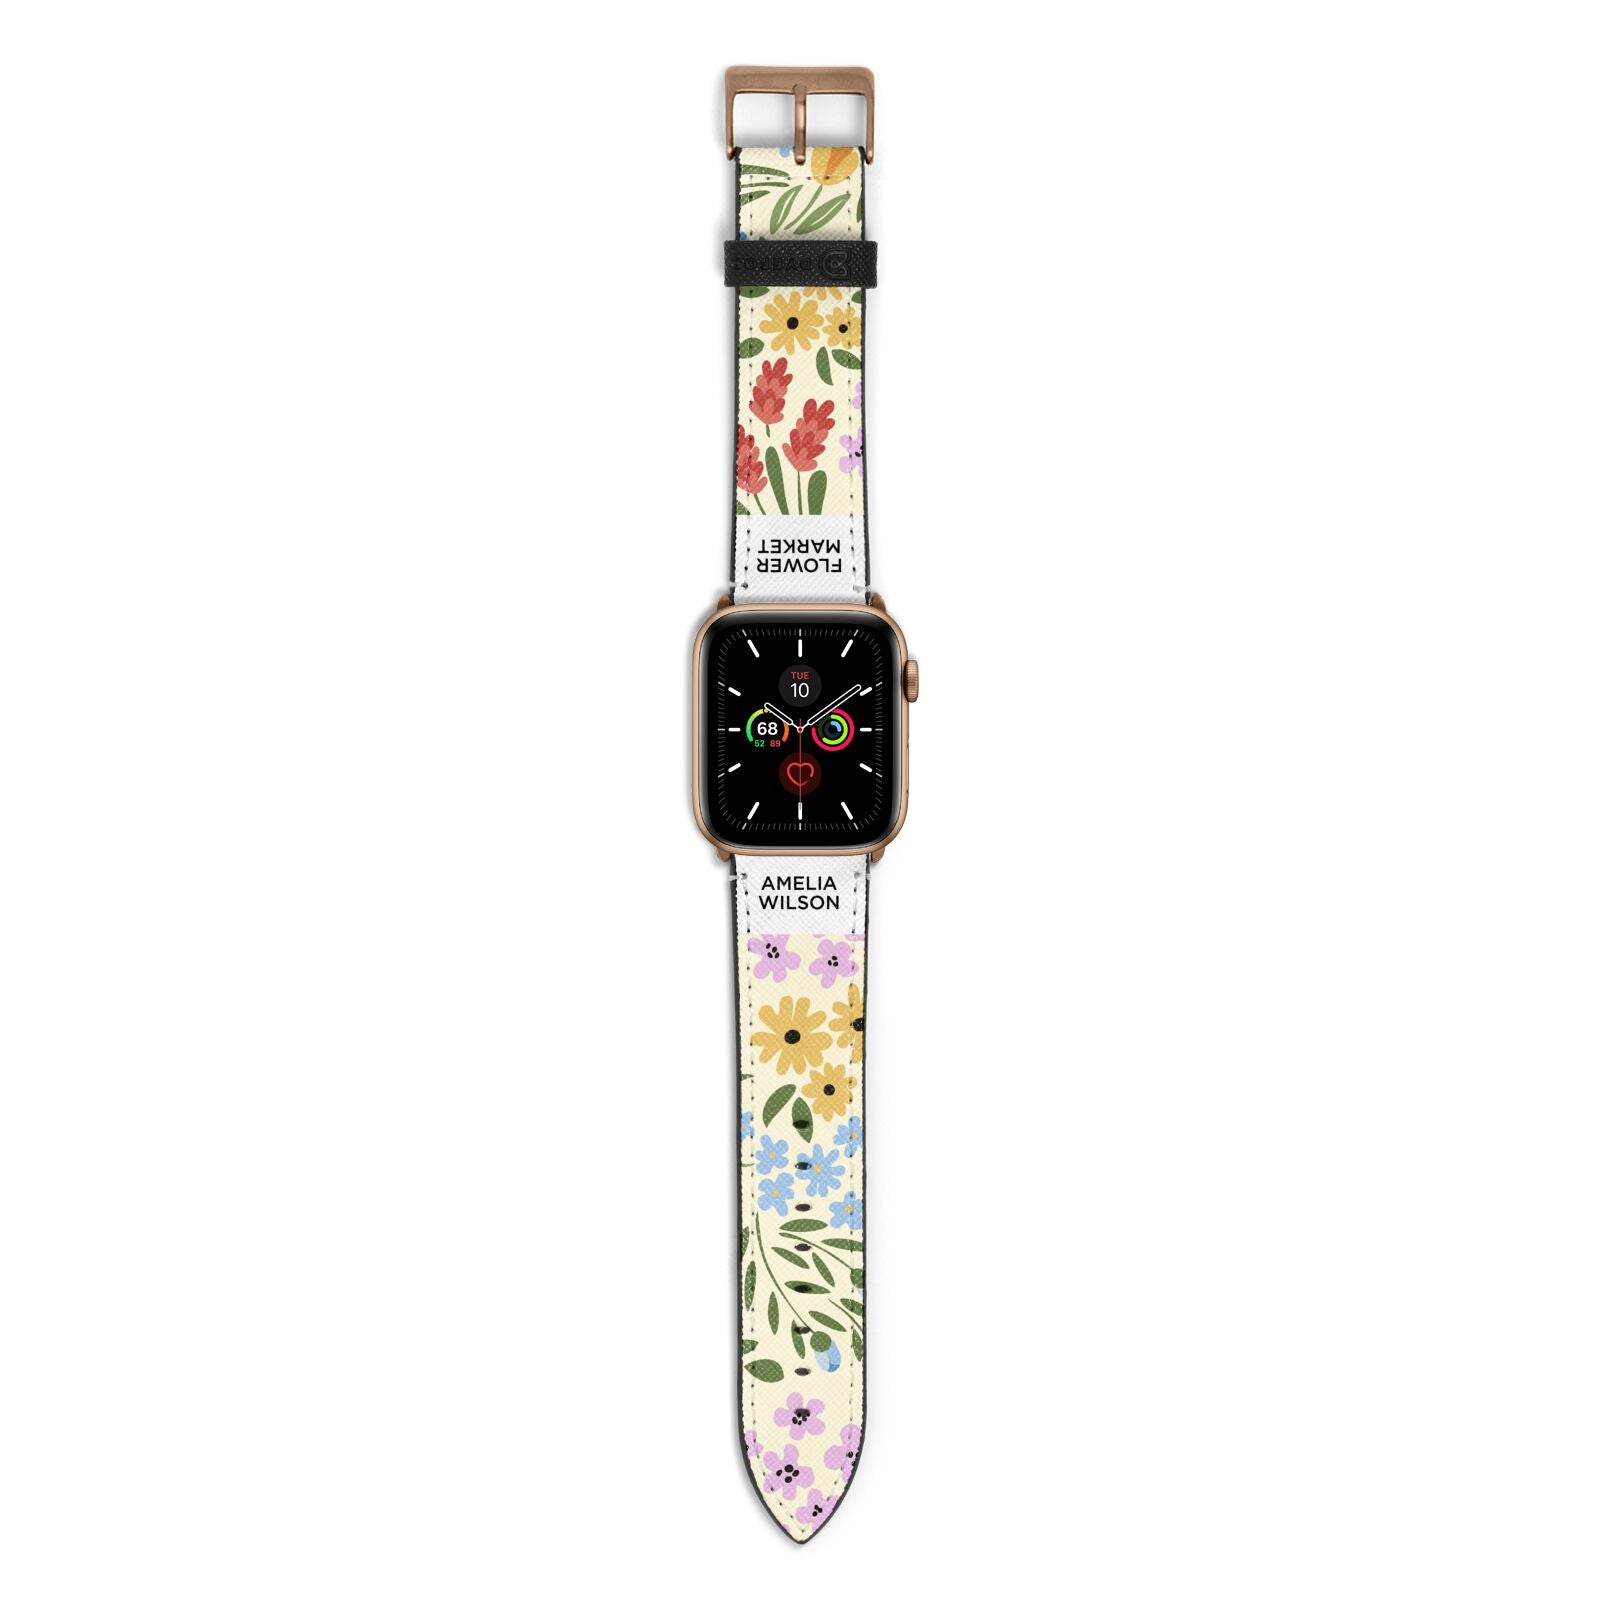 Paris Flower Market Apple Watch Strap with Gold Hardware